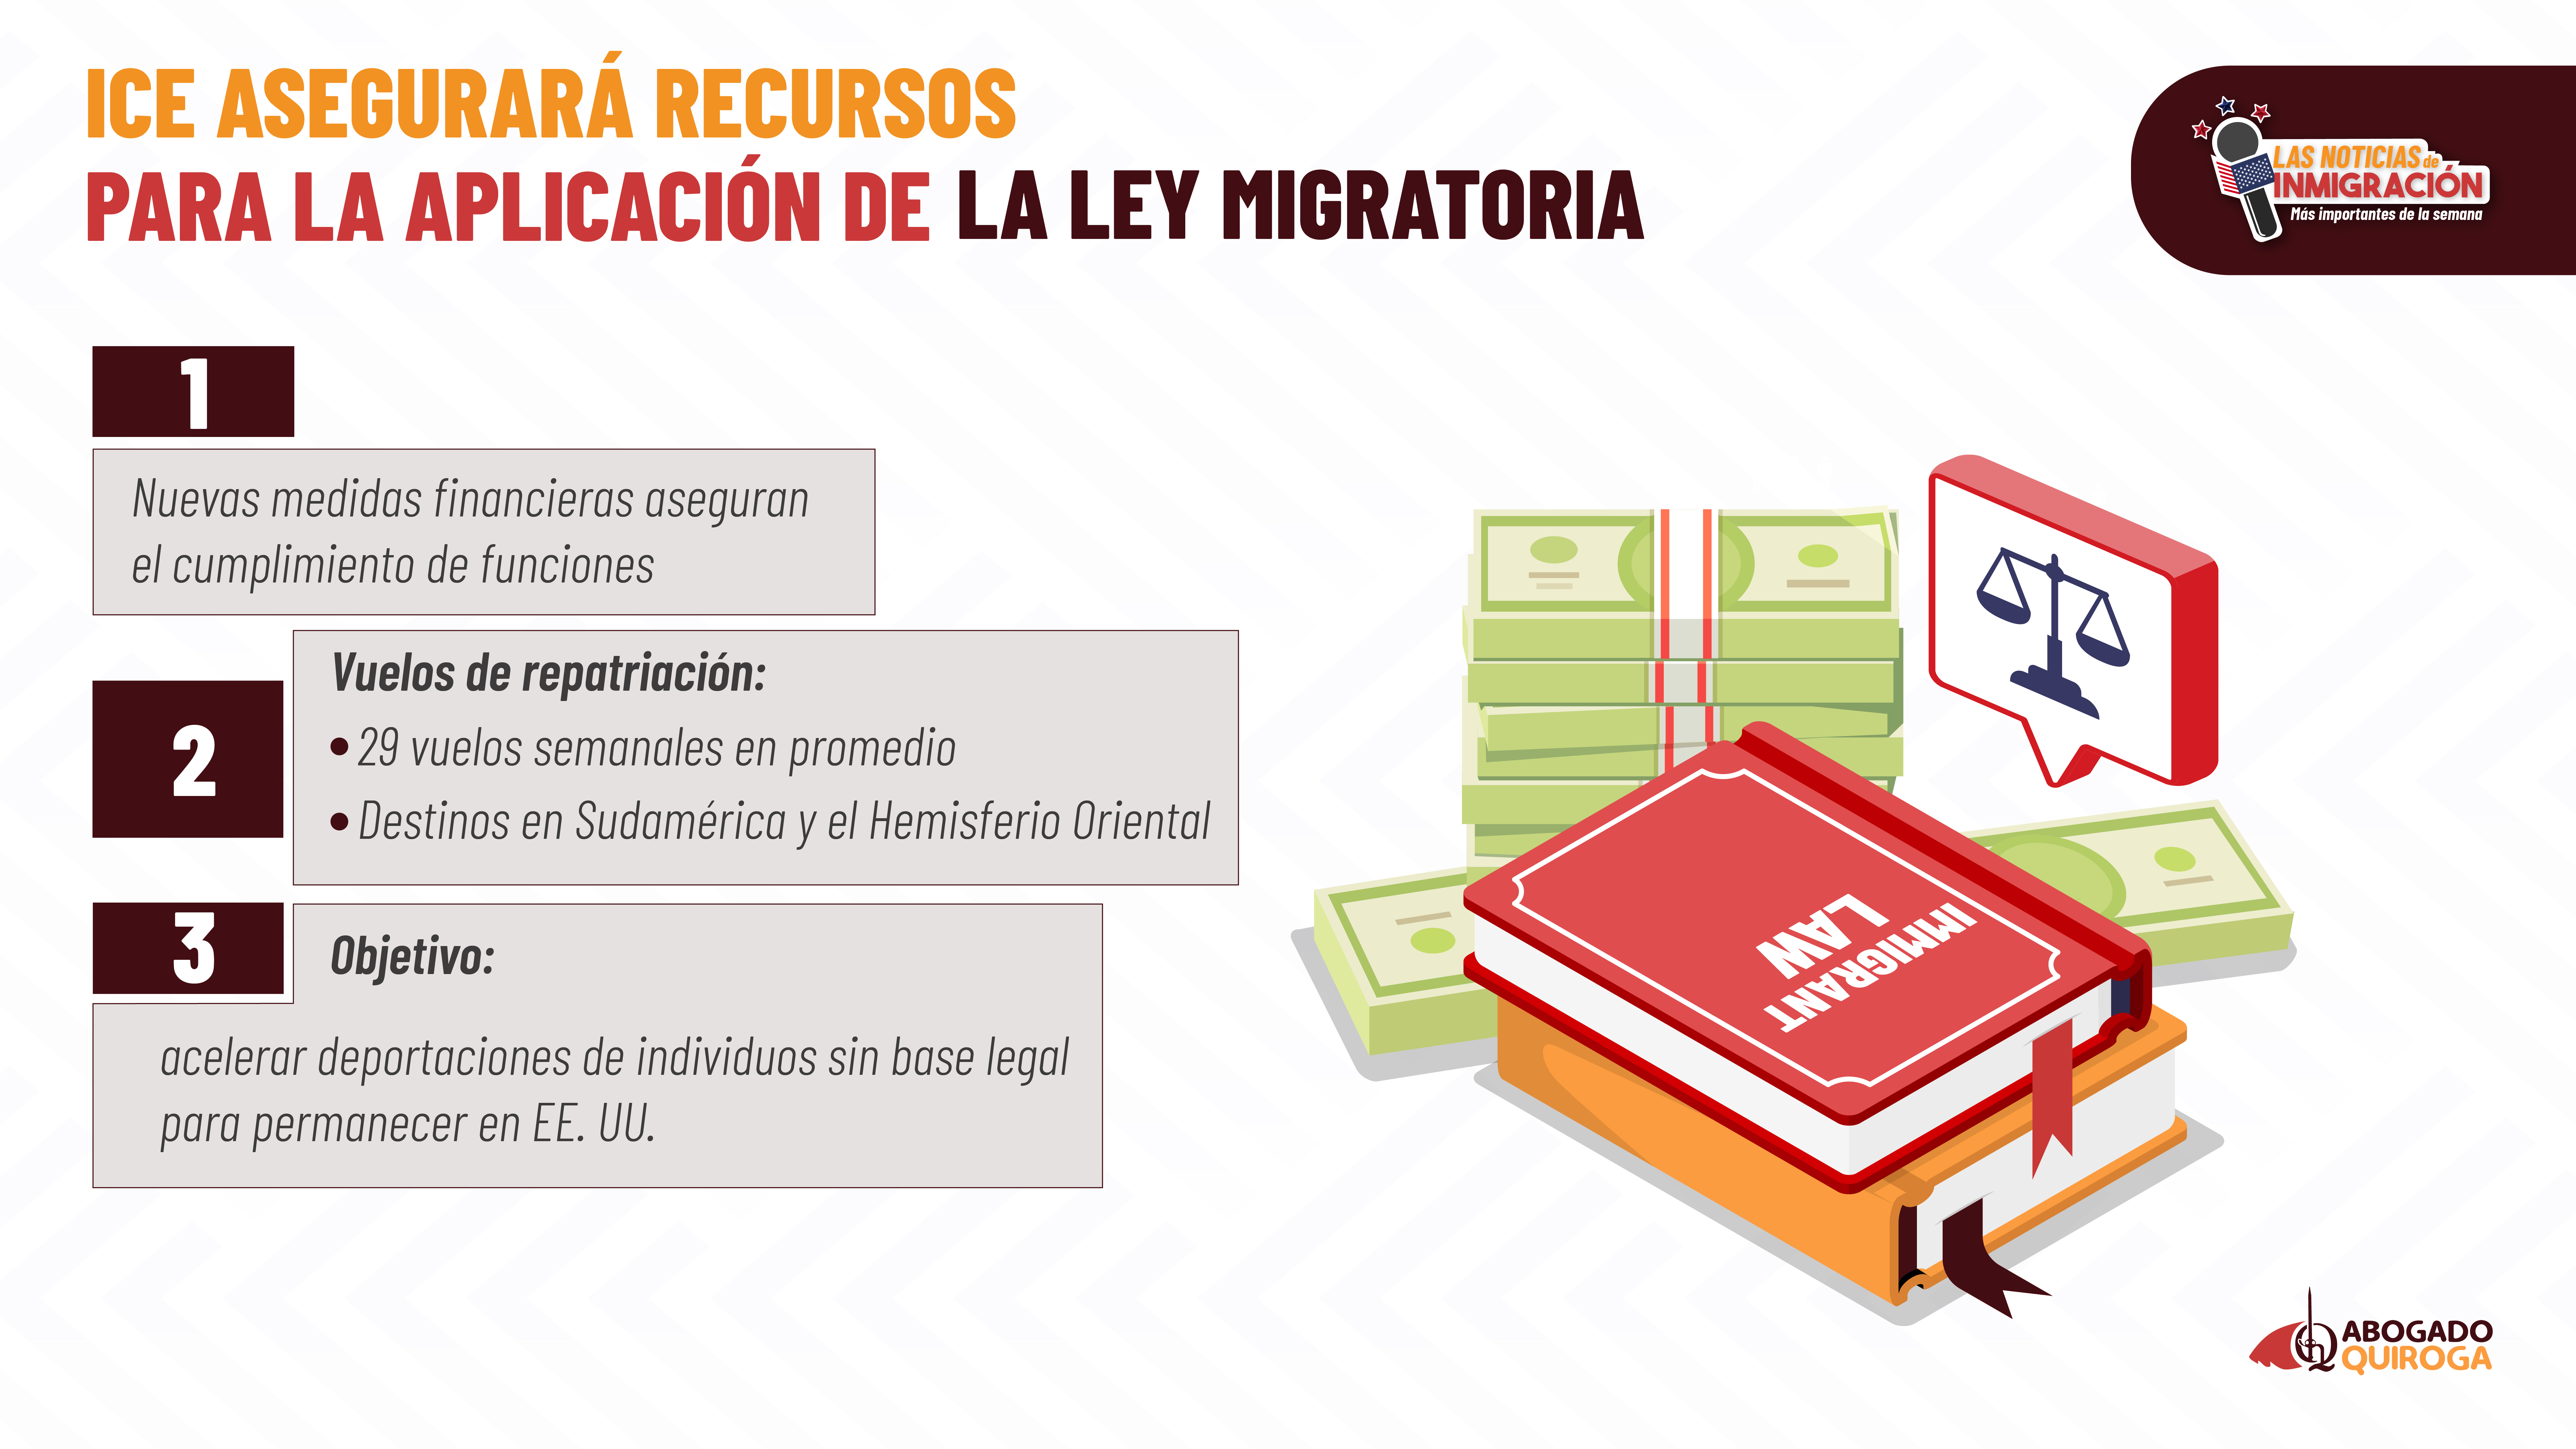 ICE asegurará recursos para la aplicación de la ley migratoria